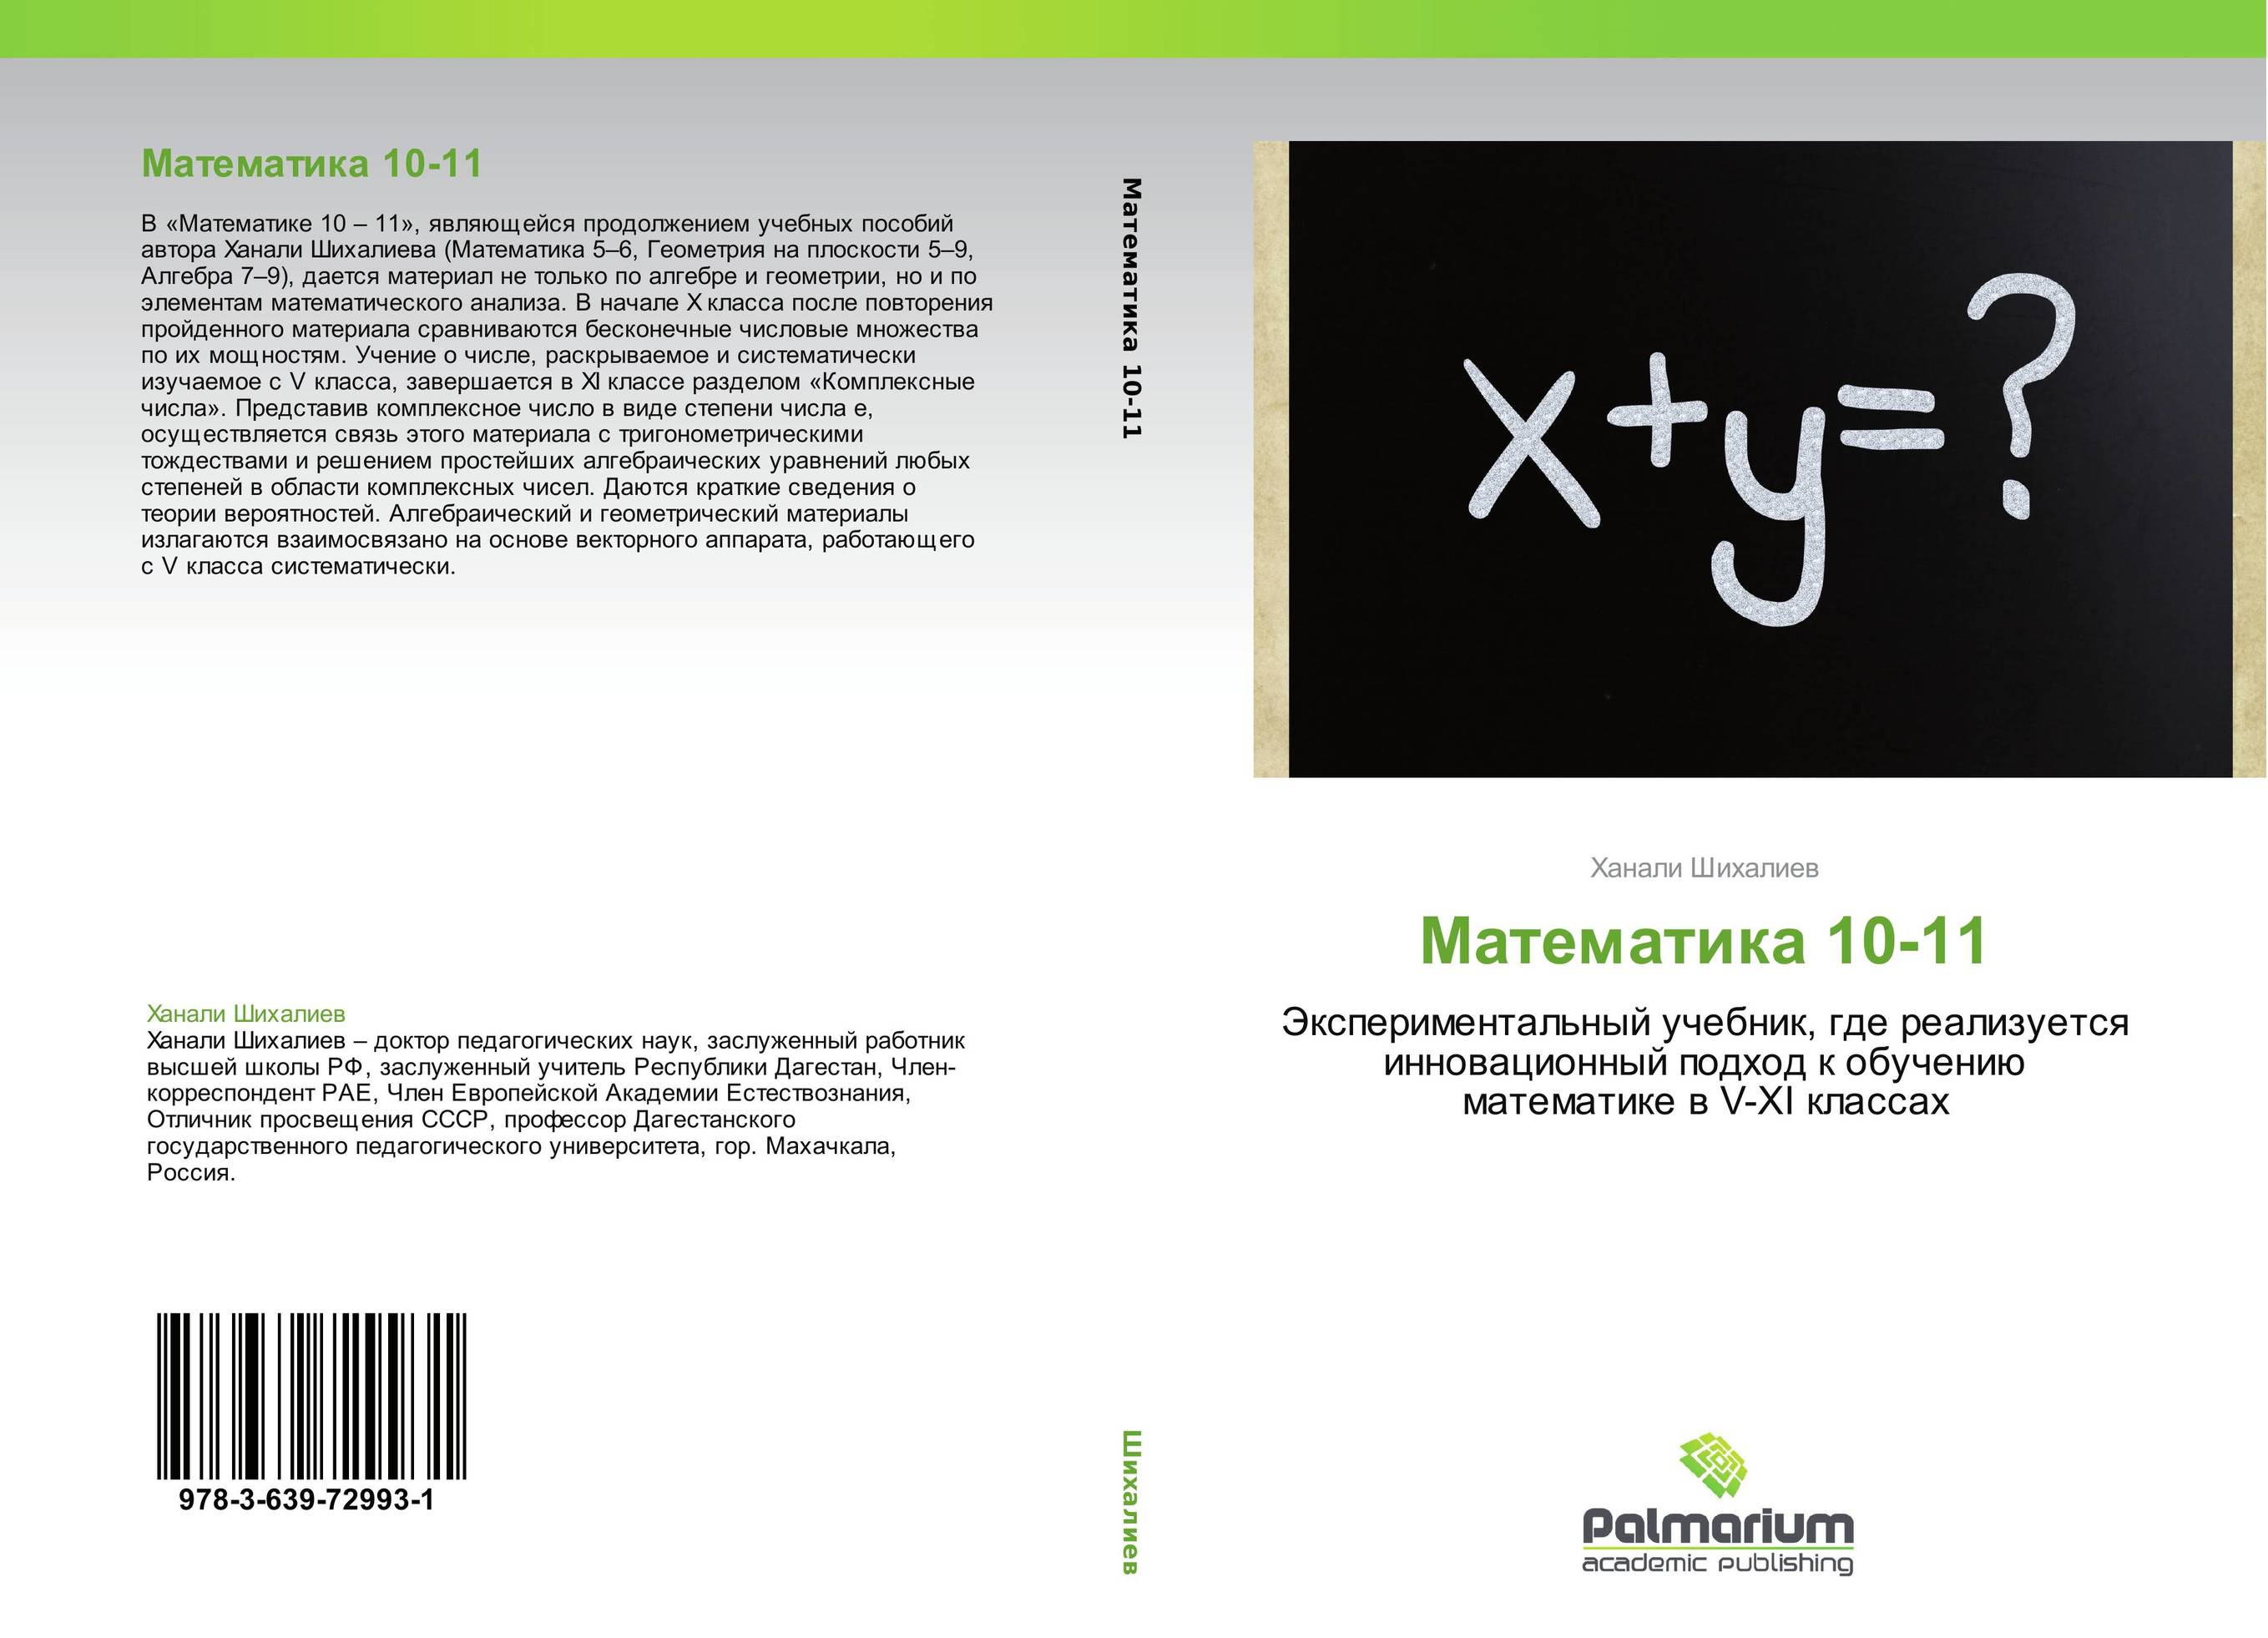 Математика 10-11. Экспериментальный учебник, где реализуется инновационный подход к обучению математике в V-XI  классах.